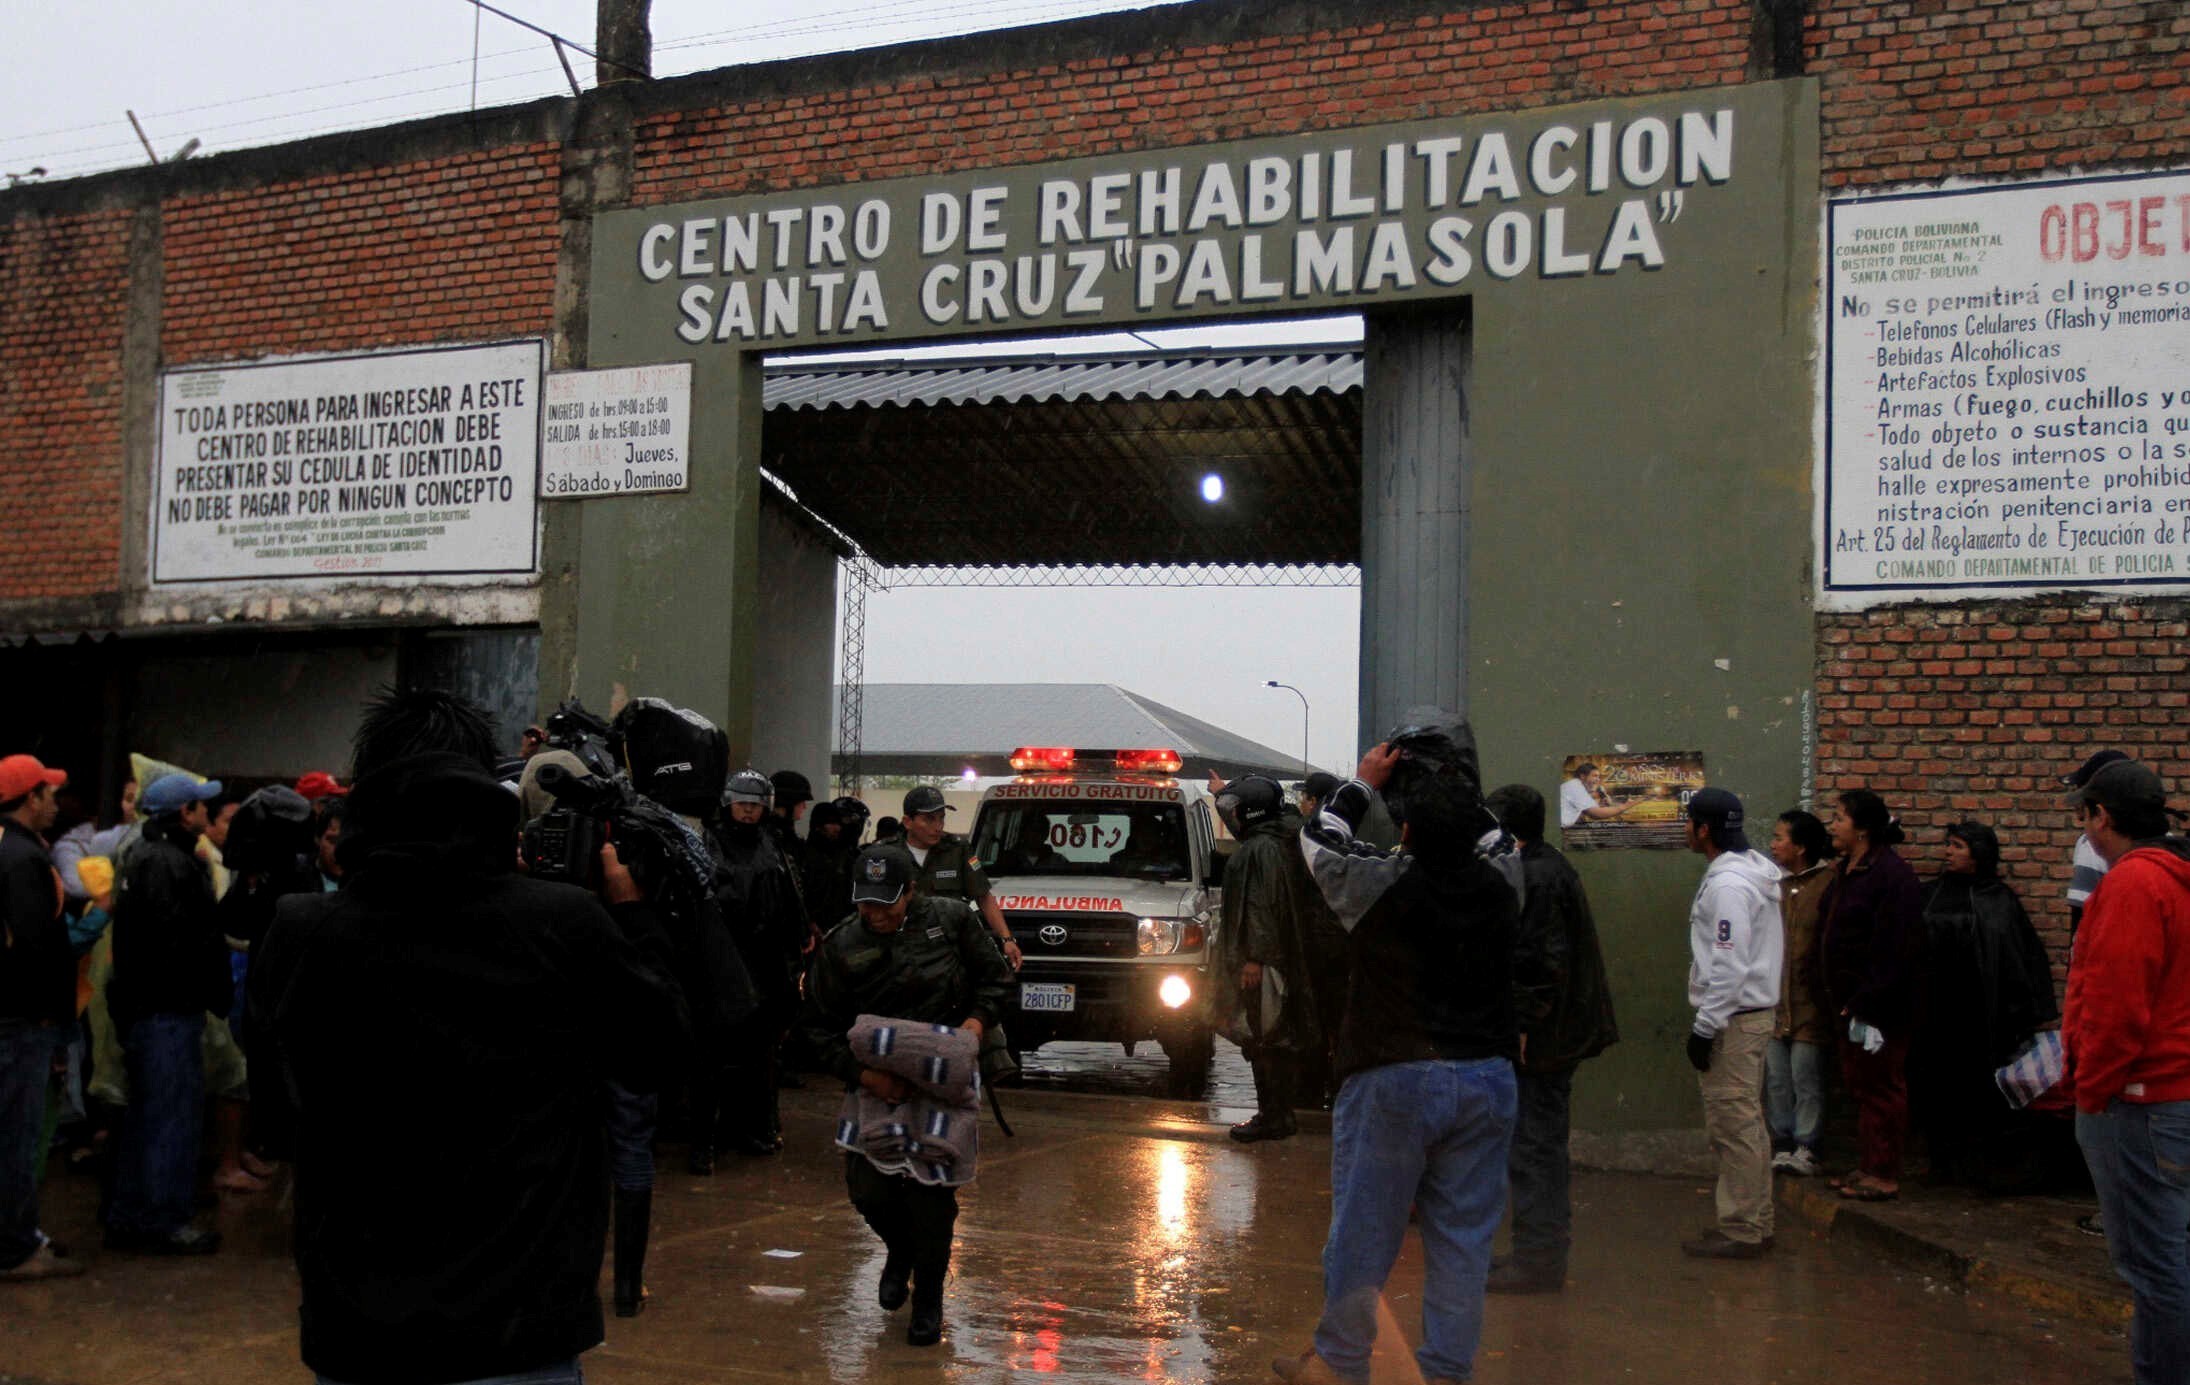 Свыше 30 заключенных крупнейшей тюрьмы в Боливии больны COVID-19